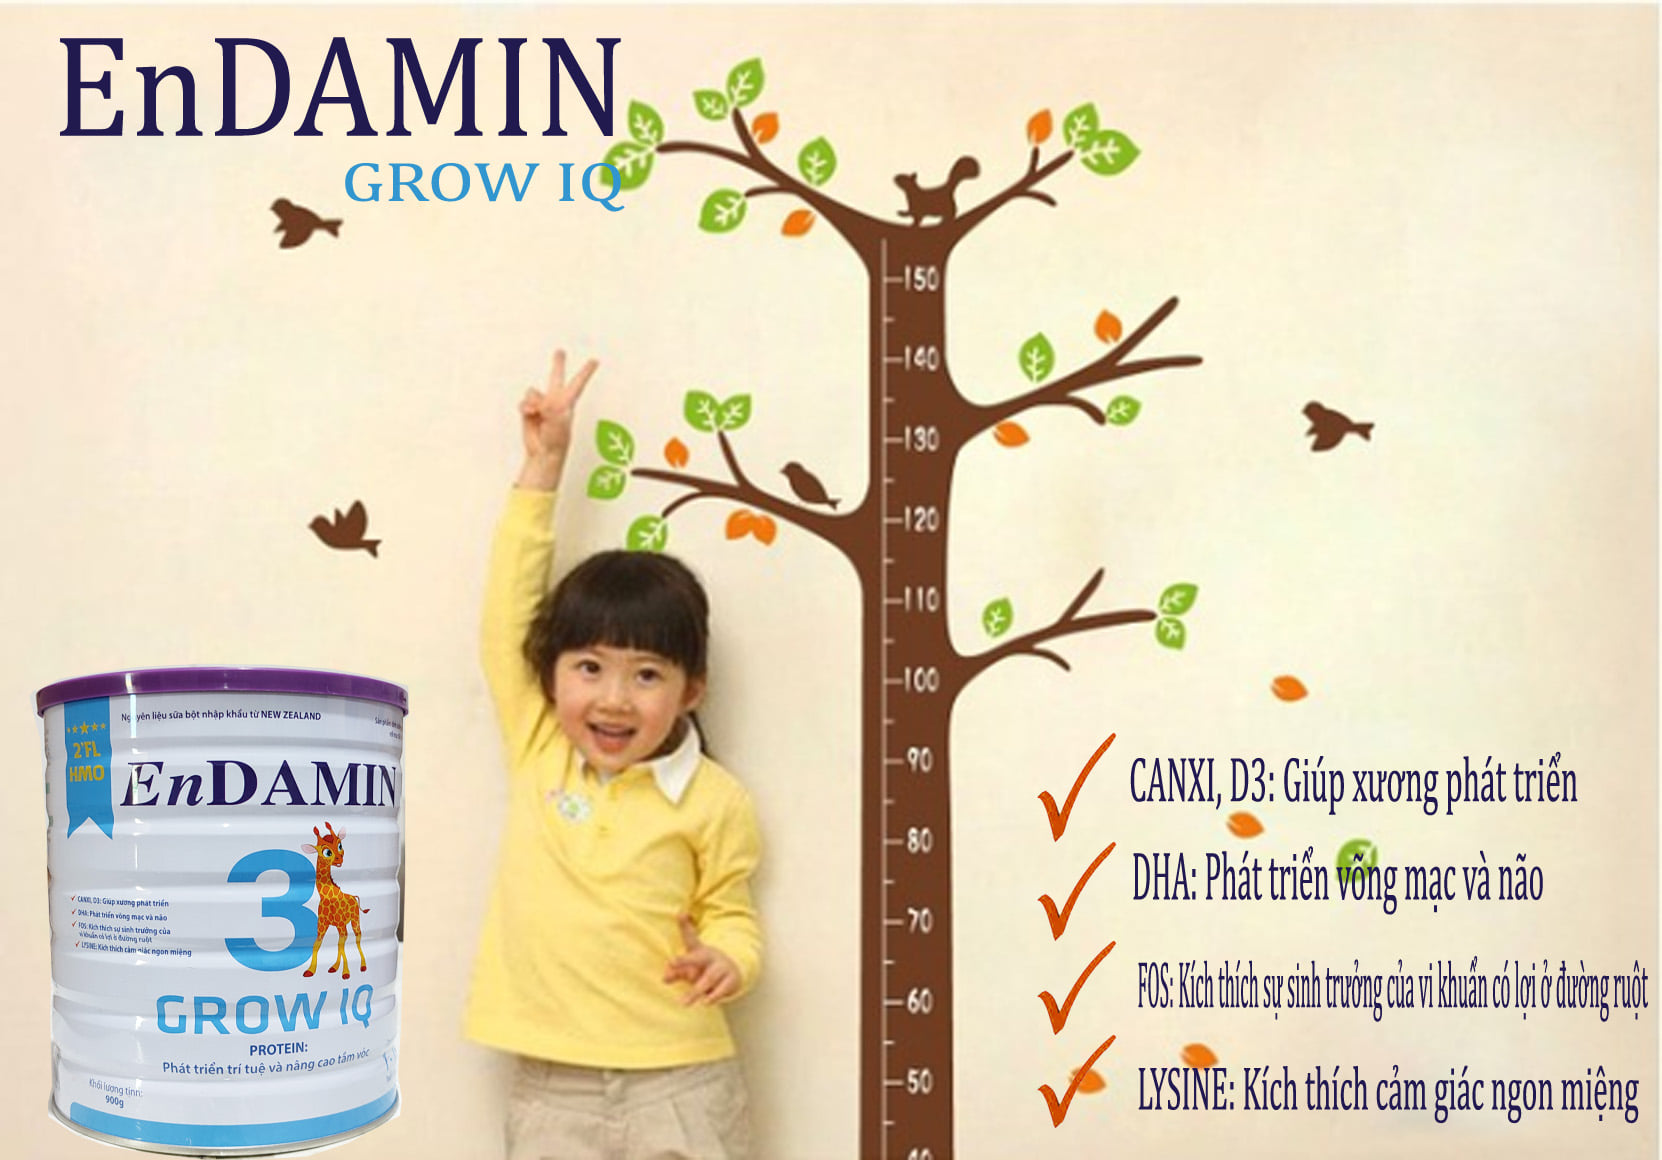 Sữa phát triển chiều cao trí não ENDAMIN GROW IQ 900g – Phát triển trí tuệ và nâng cao tầm vóc cho trẻ từ 1-15 tuổi - Good for health